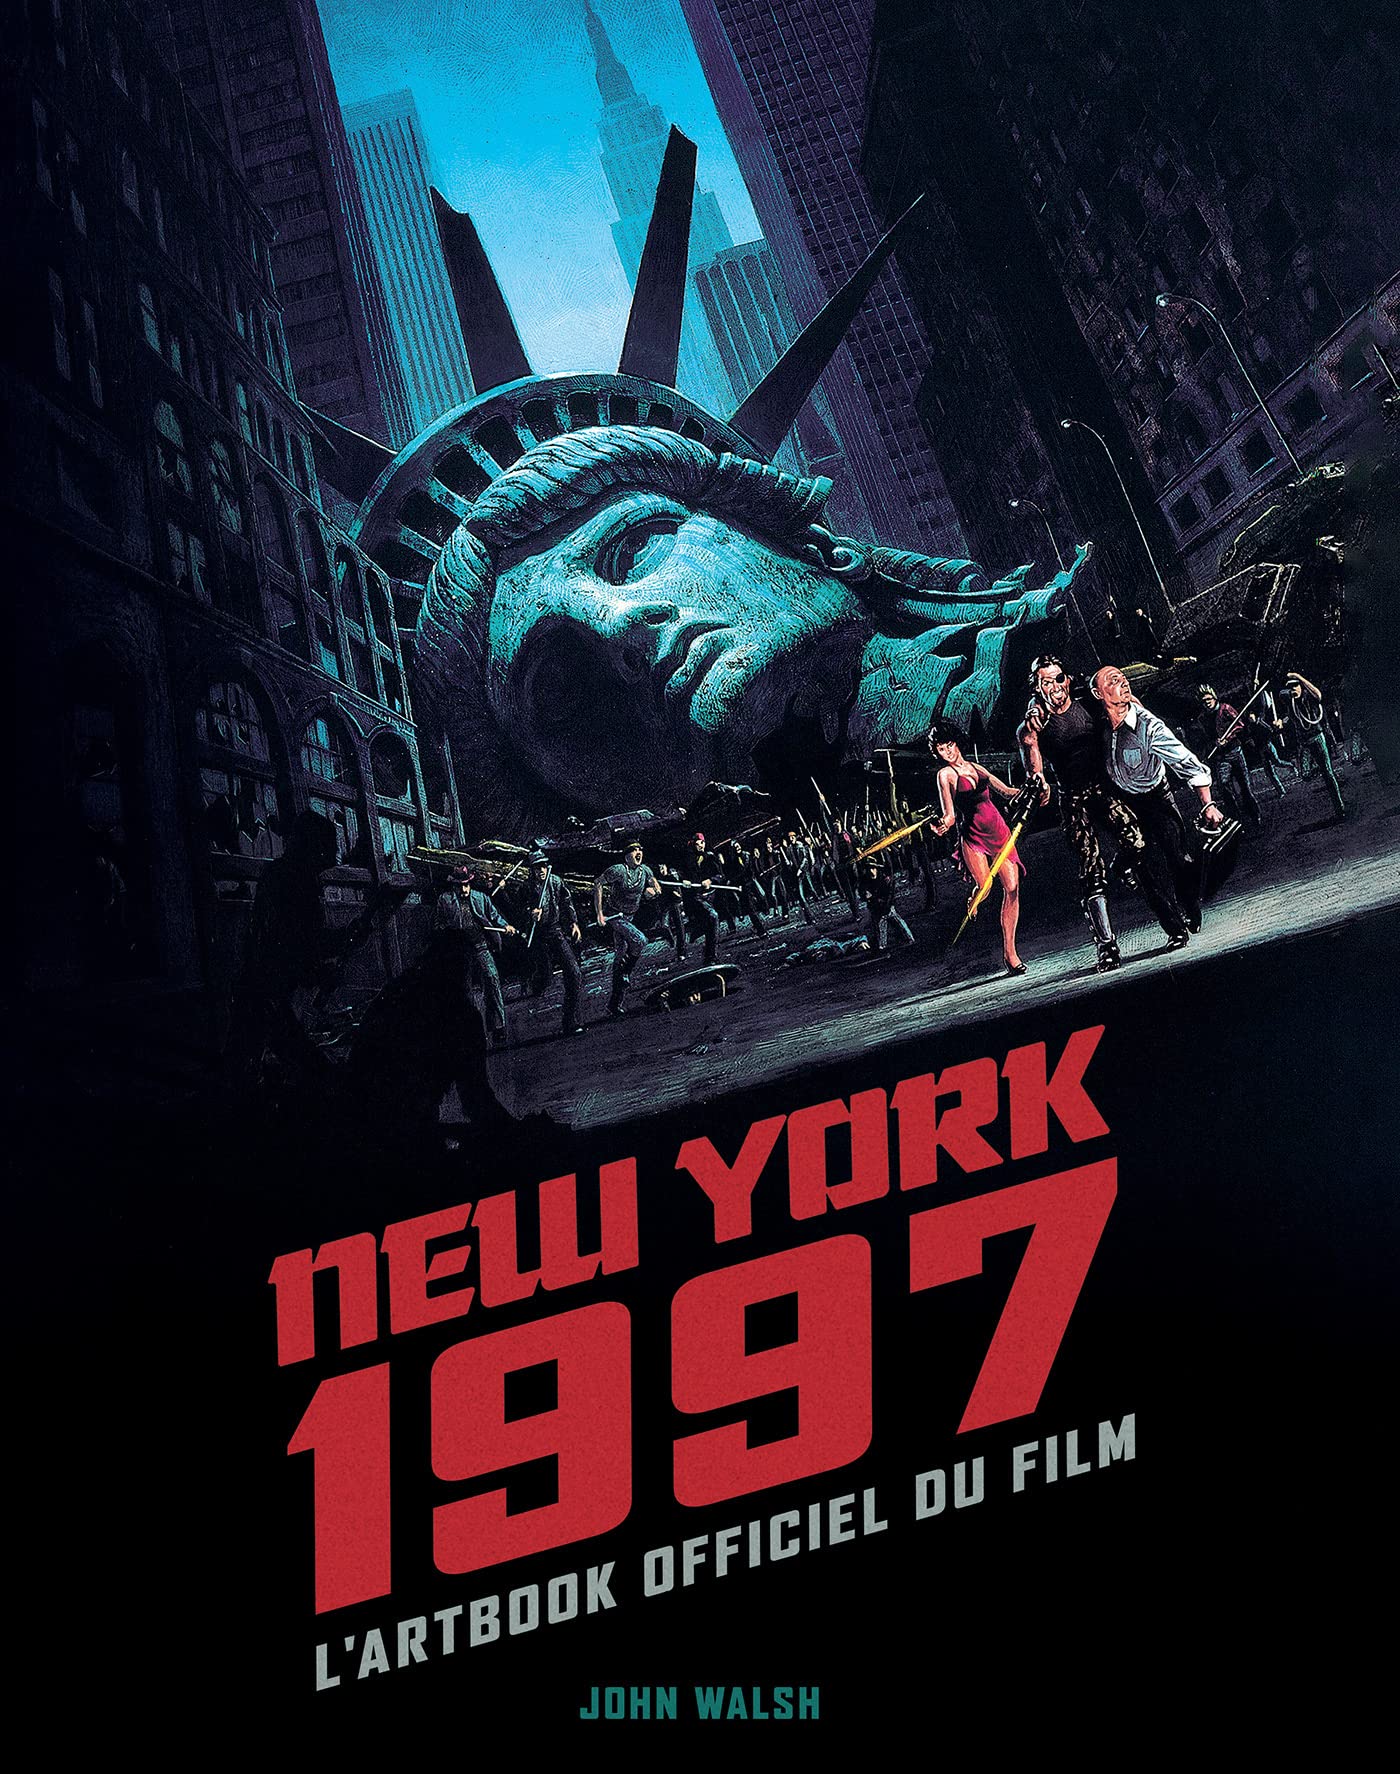 New York 1997 L’Artbook officiel du film